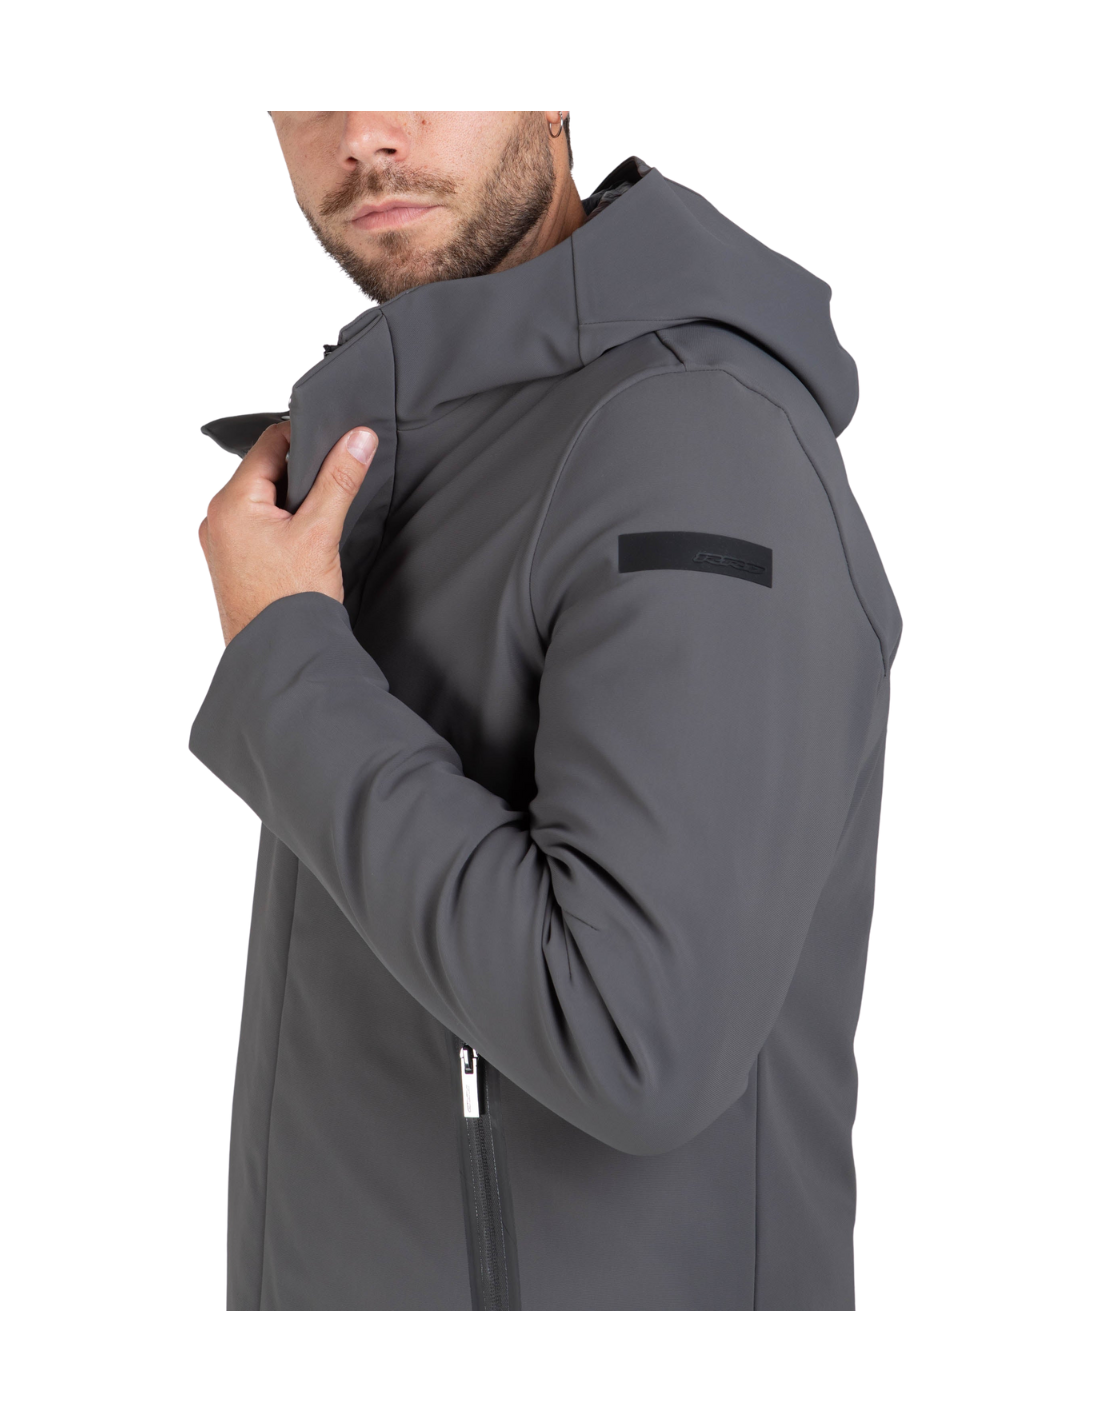 RRD JKT WINTER THERMO GRIGIO giacca termica con cappuccio, waterproof